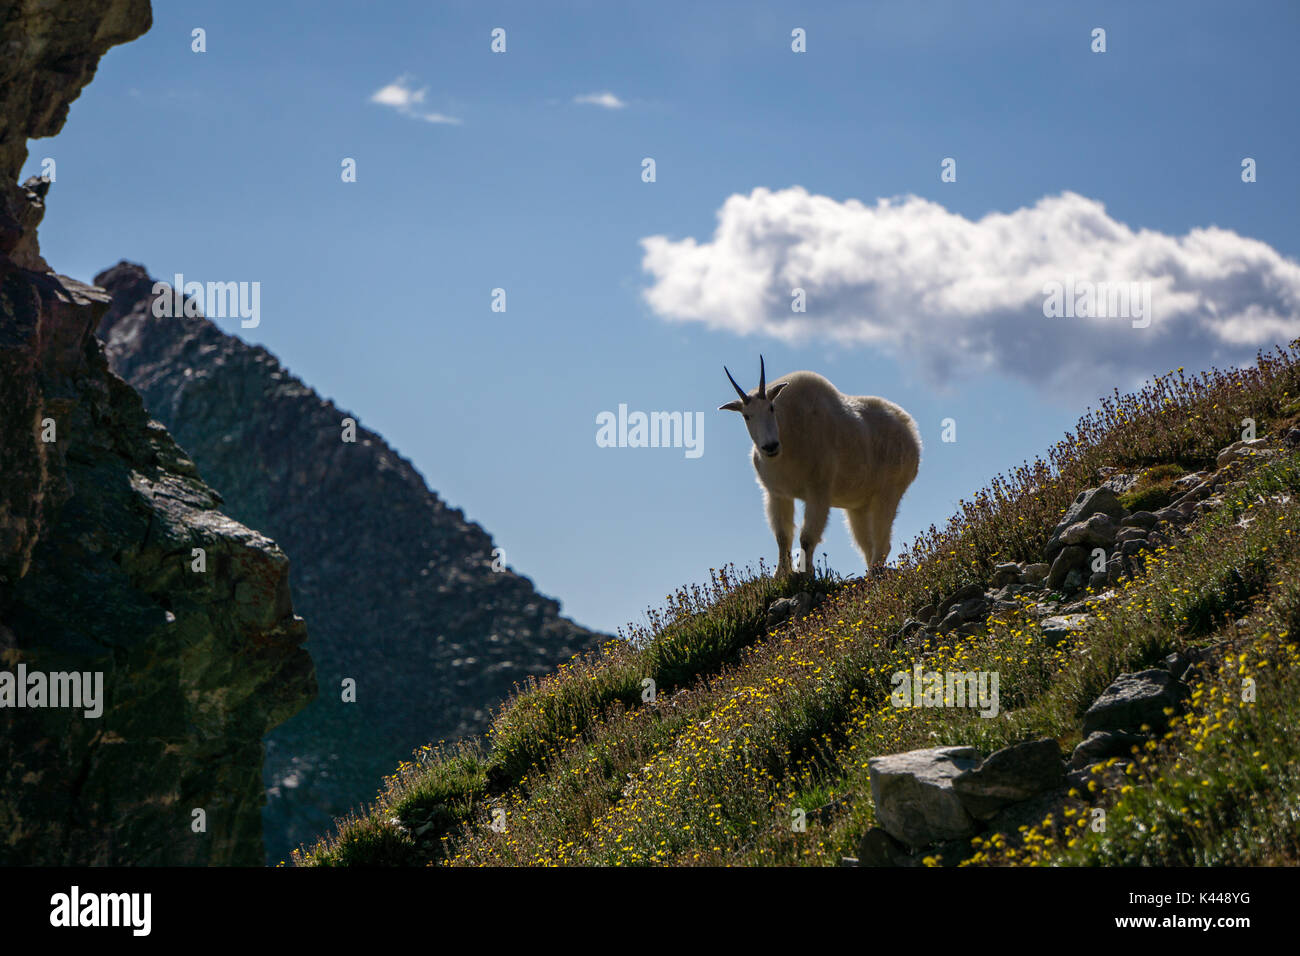 A mother Mountain Goat on Grays Peak, Colorado. Stock Photo